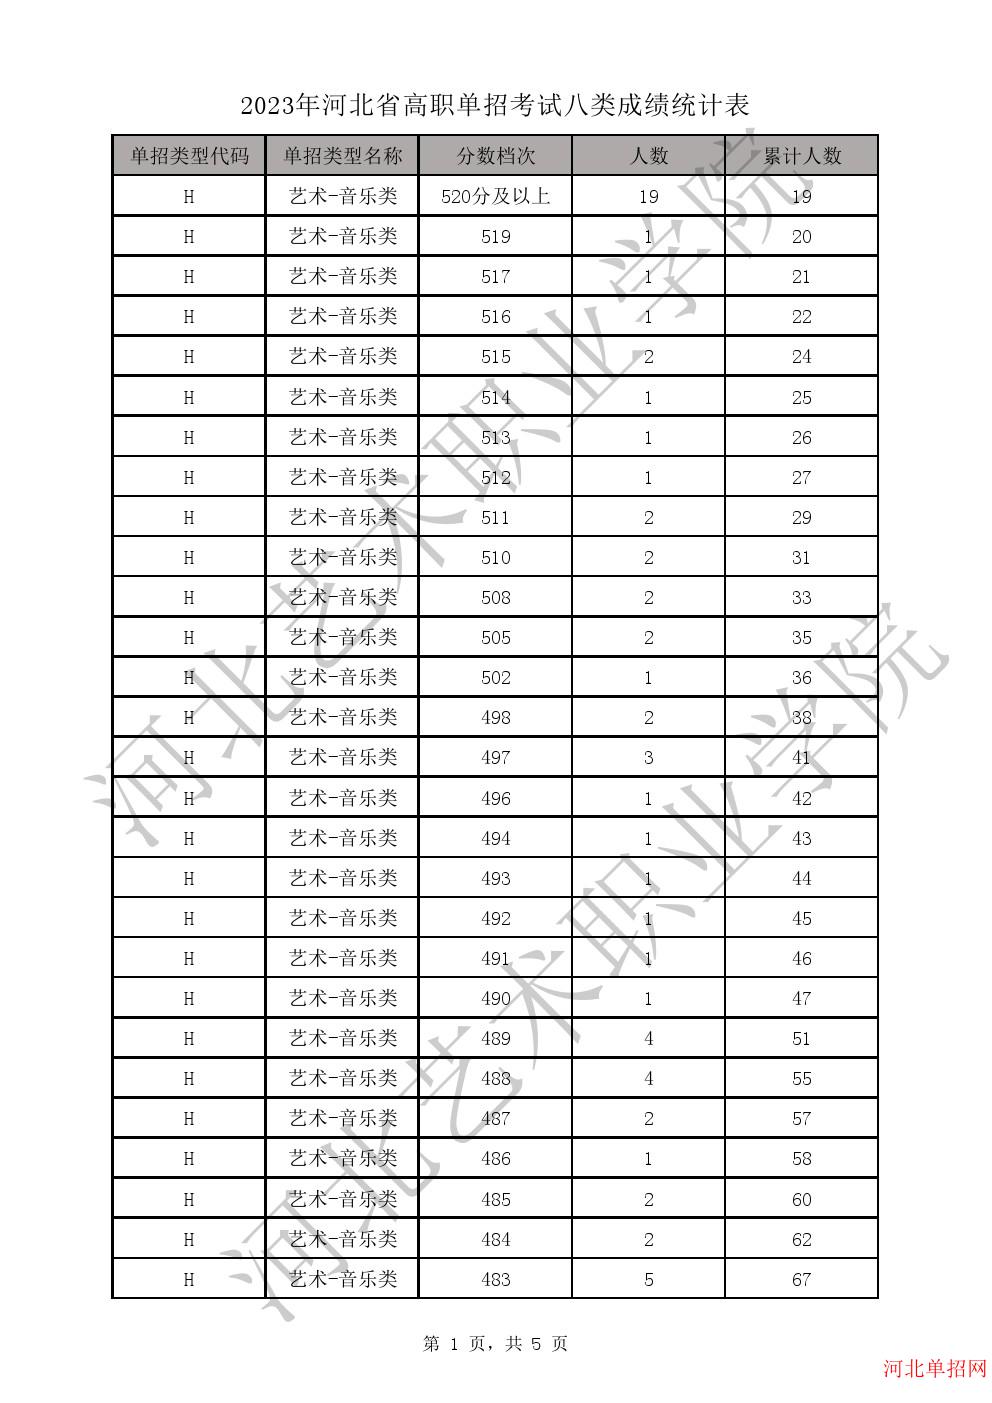 2023年河北省高职单招考试八类一分一档表-H艺术-音乐类一分一档表 图1